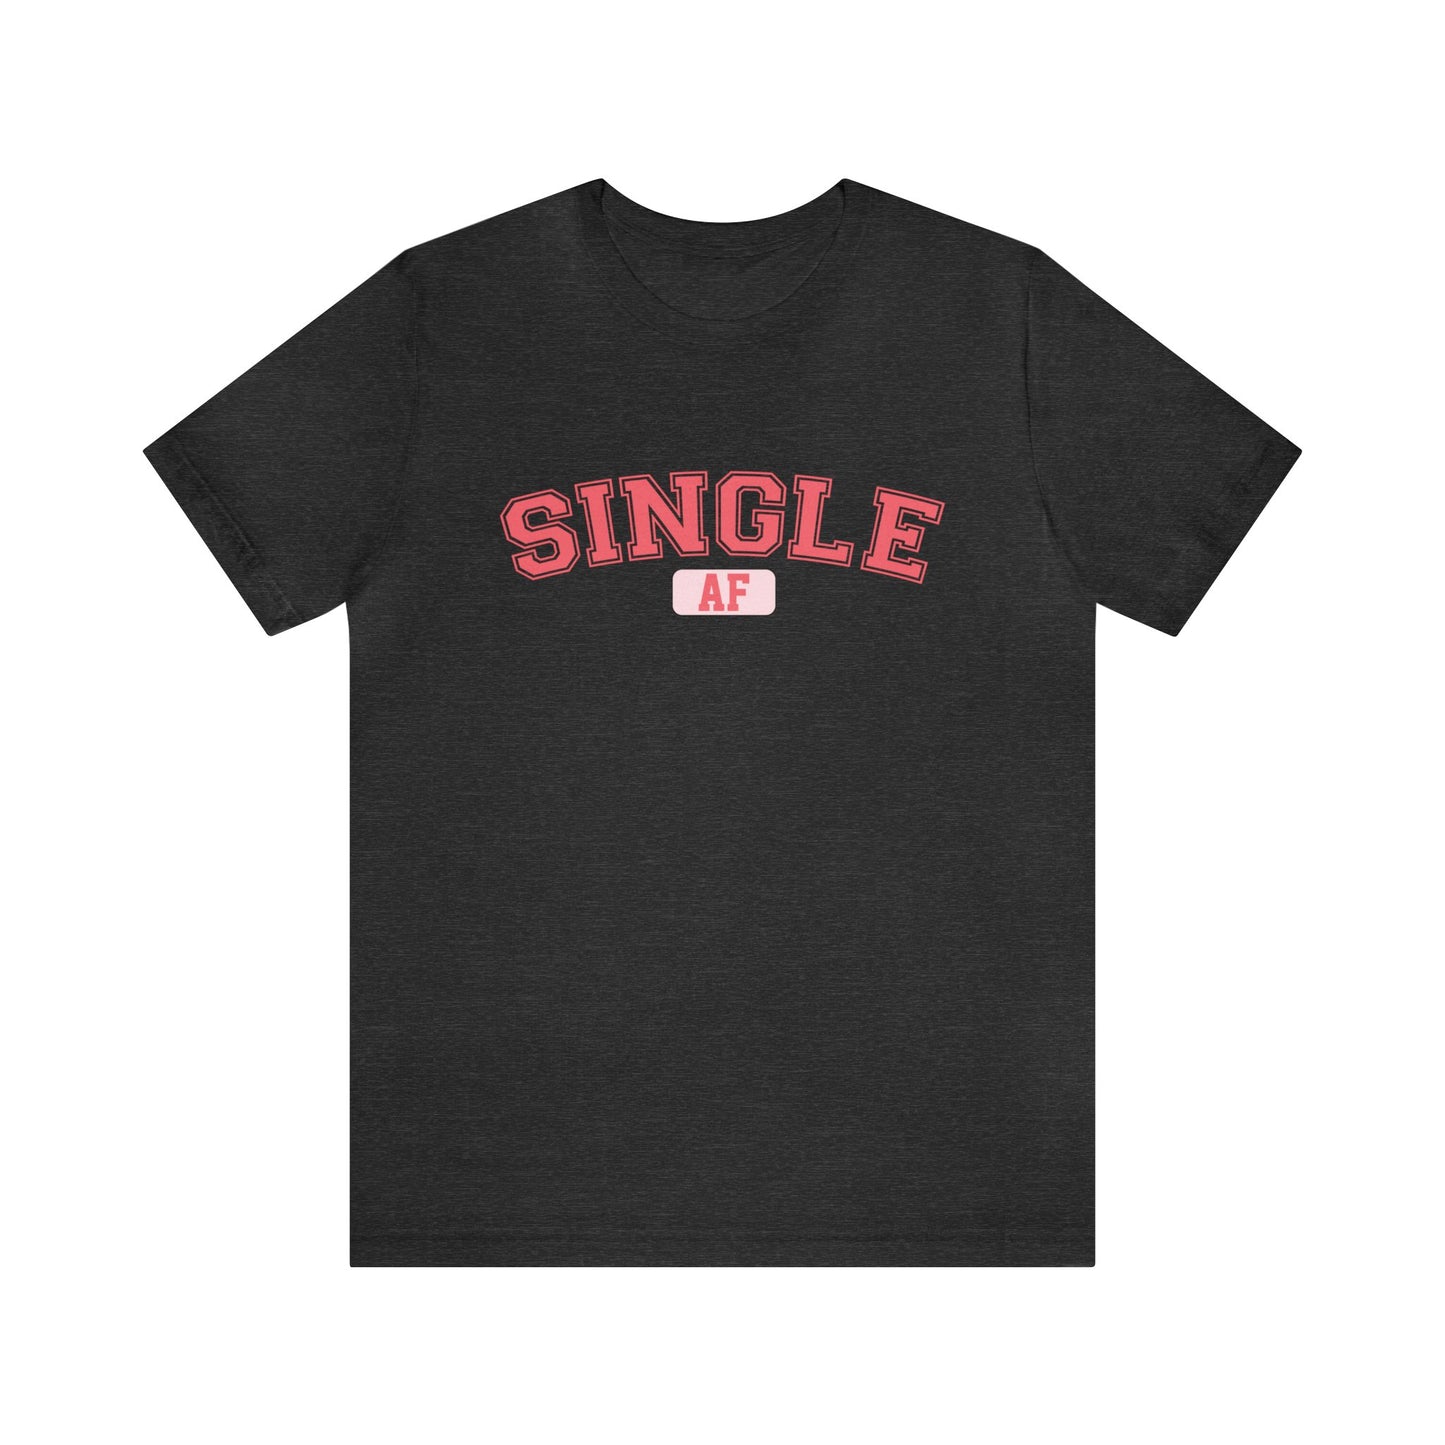 Single AF Women's Tshirt